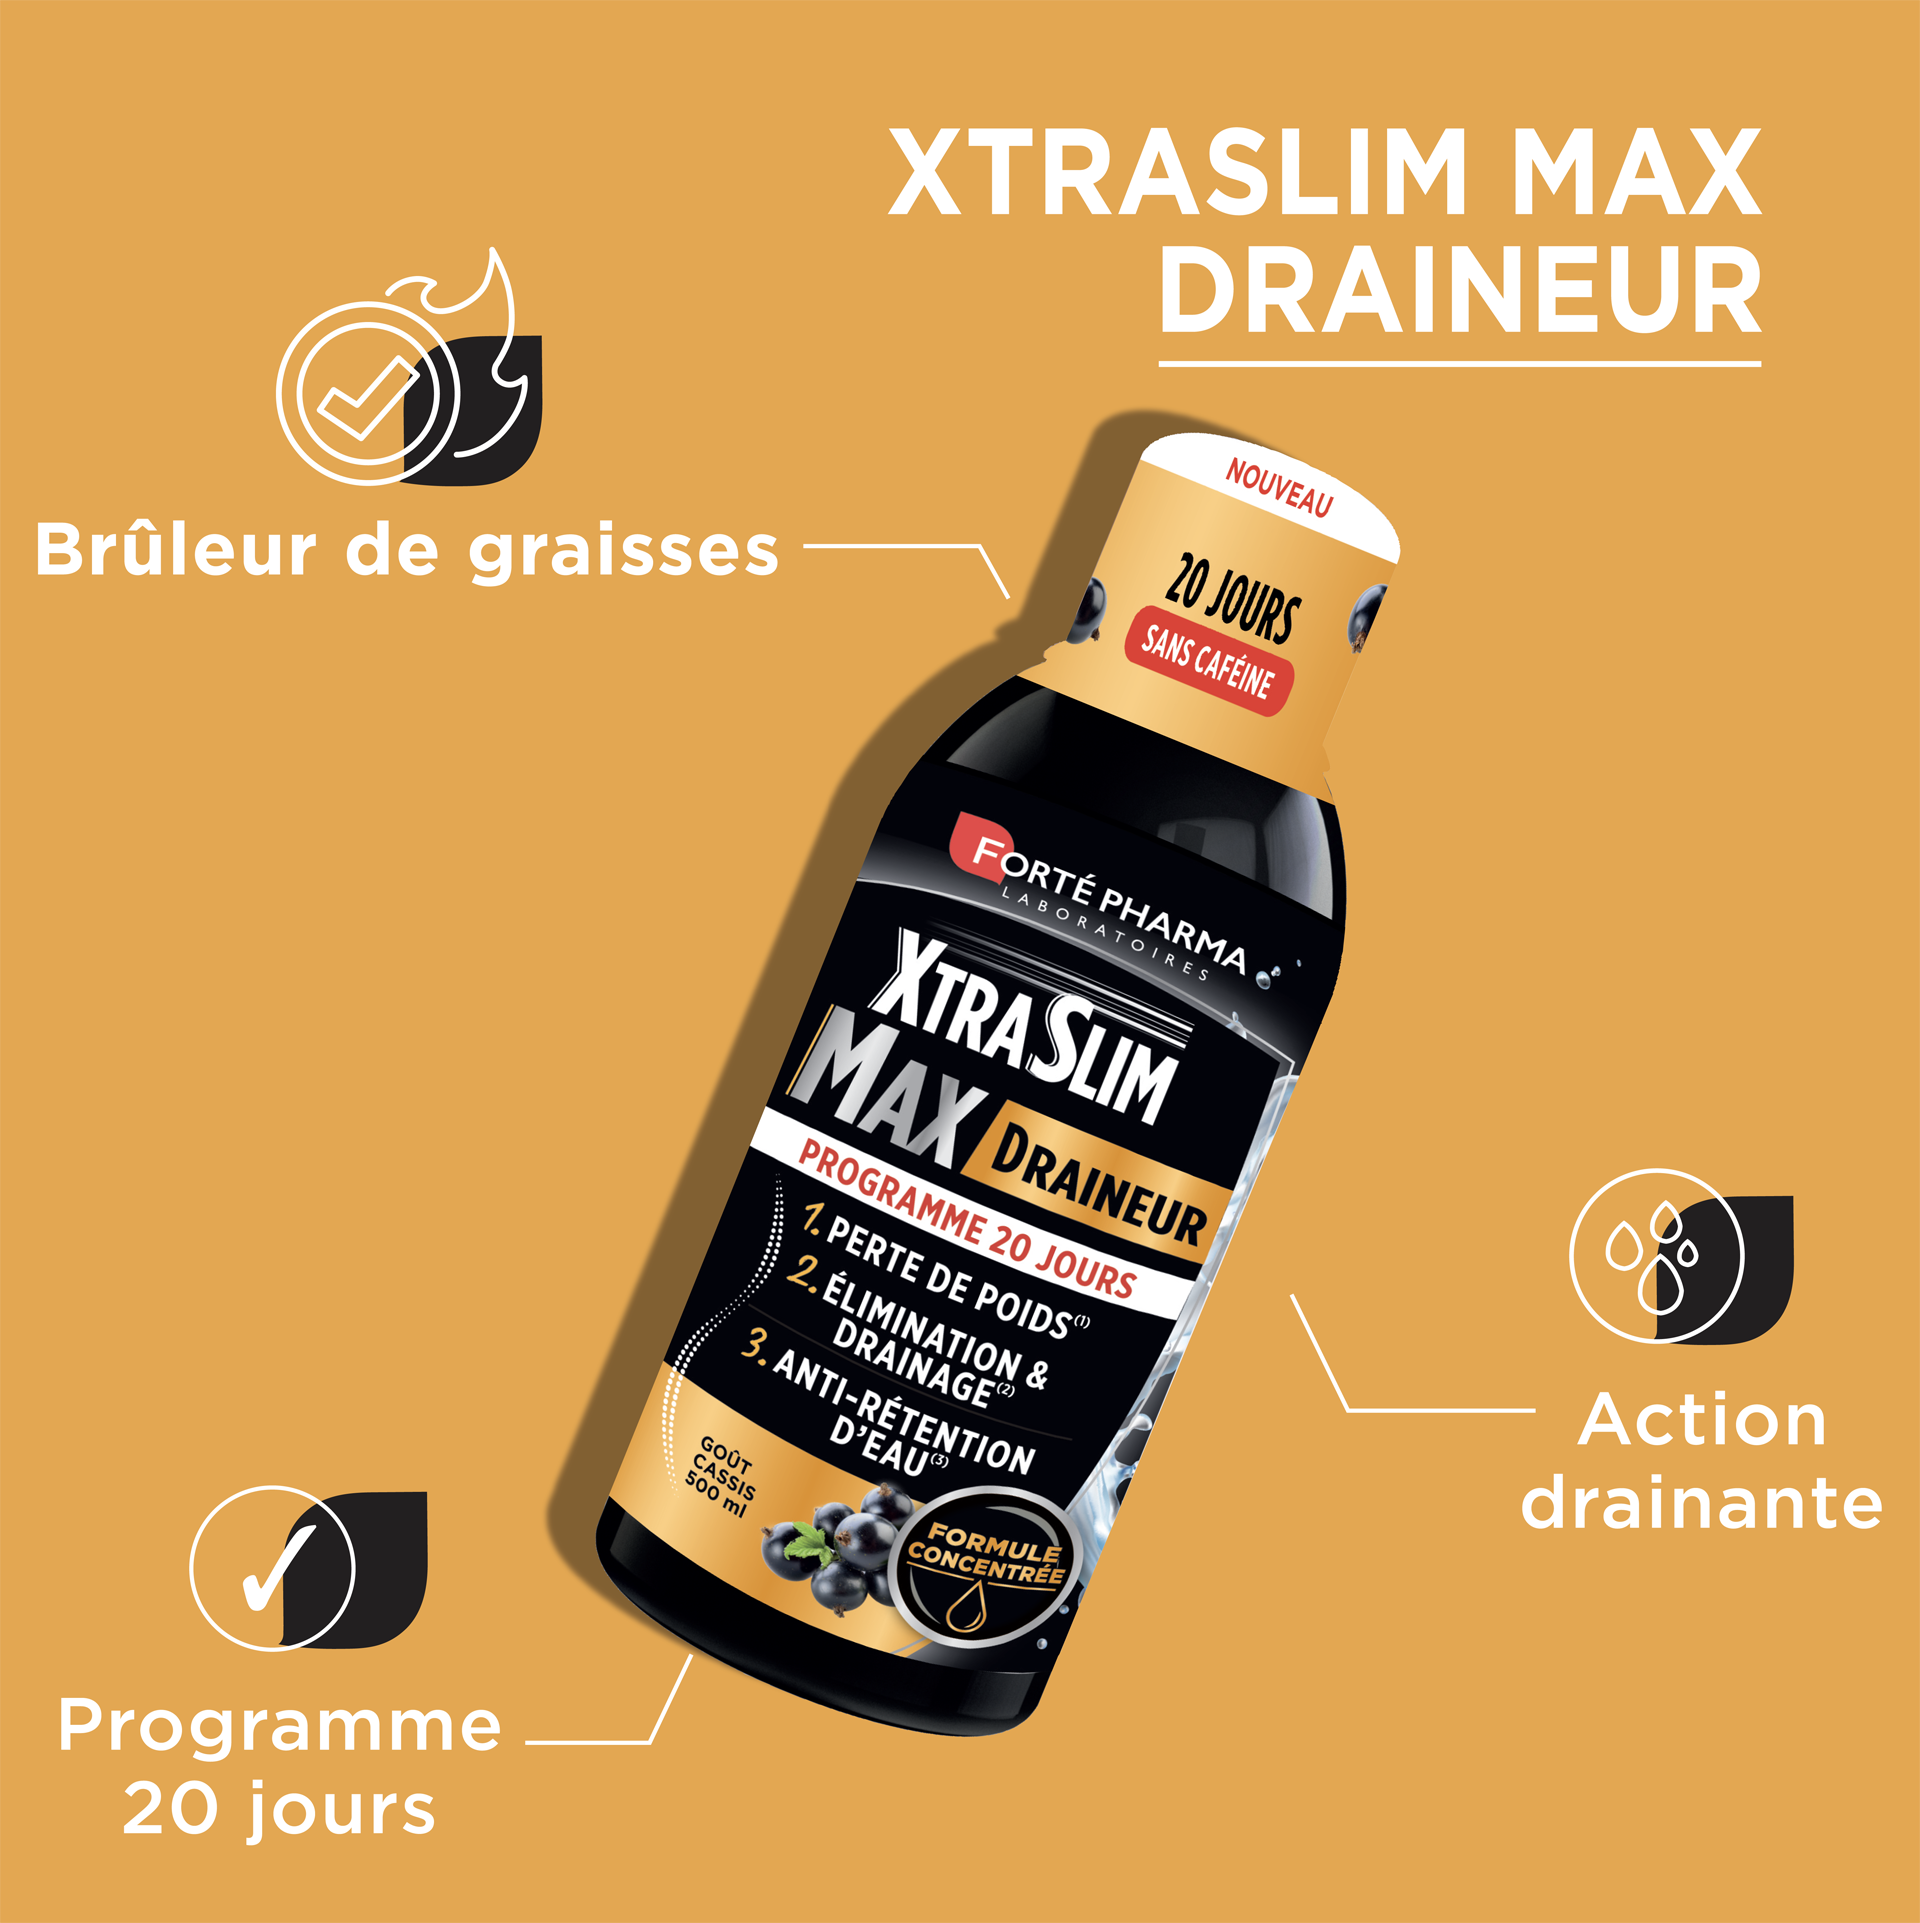 XtraSlim Max Draineur drainant perte de poids bénéfices